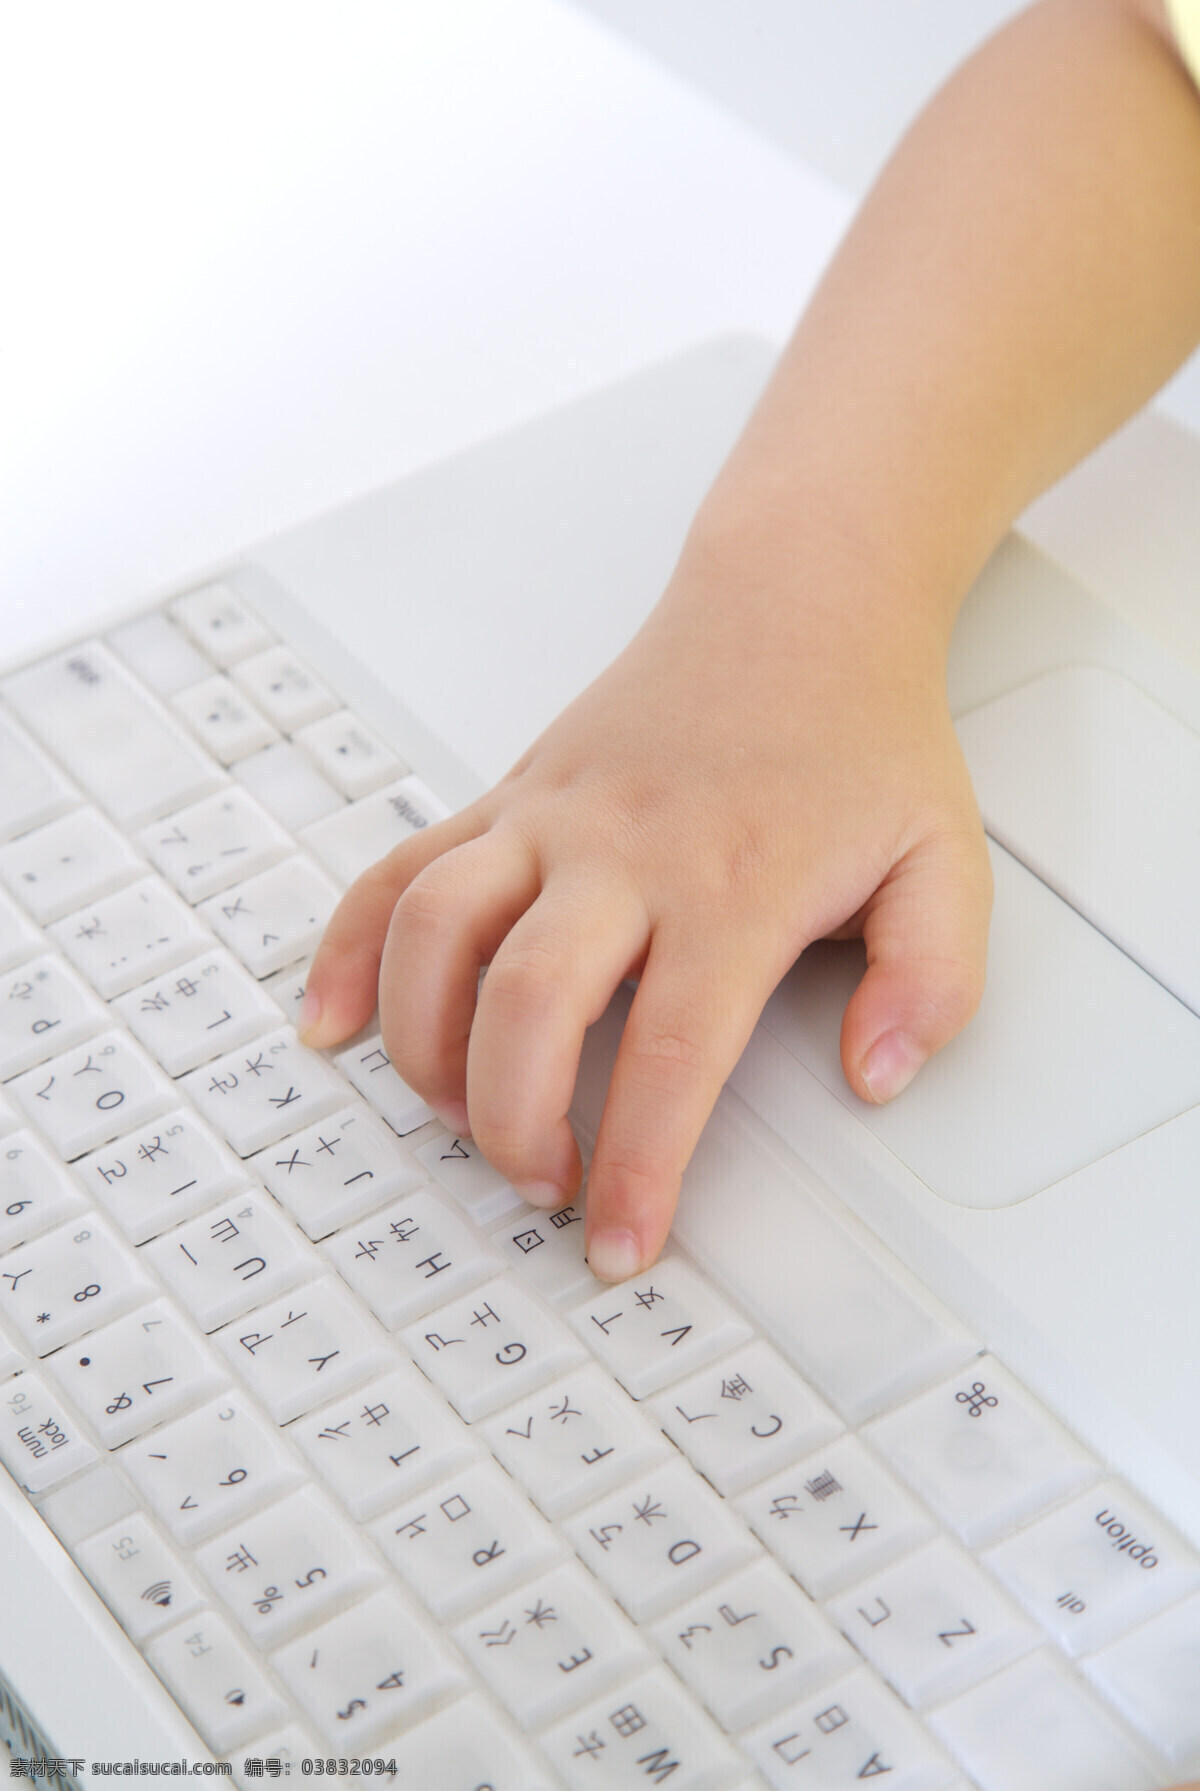 宝宝 手 键盘 电脑 婴儿 儿童 幼儿 早教 亲子 人物图库 儿童幼儿